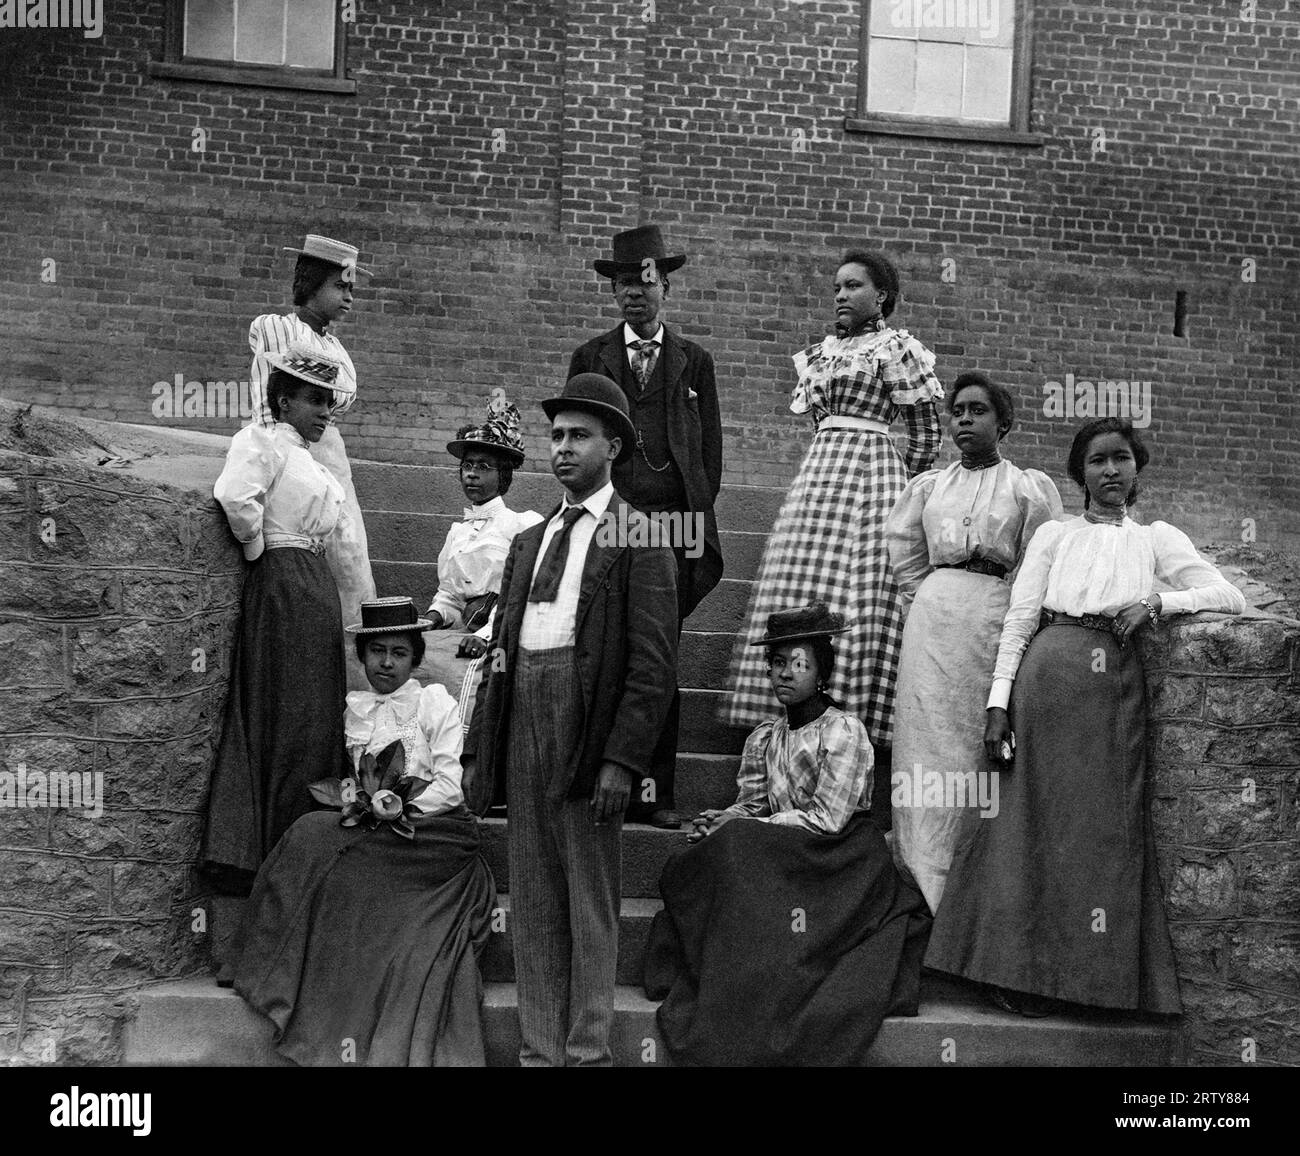 Atlanta, Géorgie c 1900 hommes et femmes afro-américains posent pour un portrait sur les marches de l'Université d'Atlanta, Géorgie. Photographie de Thomas E. Askew. Banque D'Images